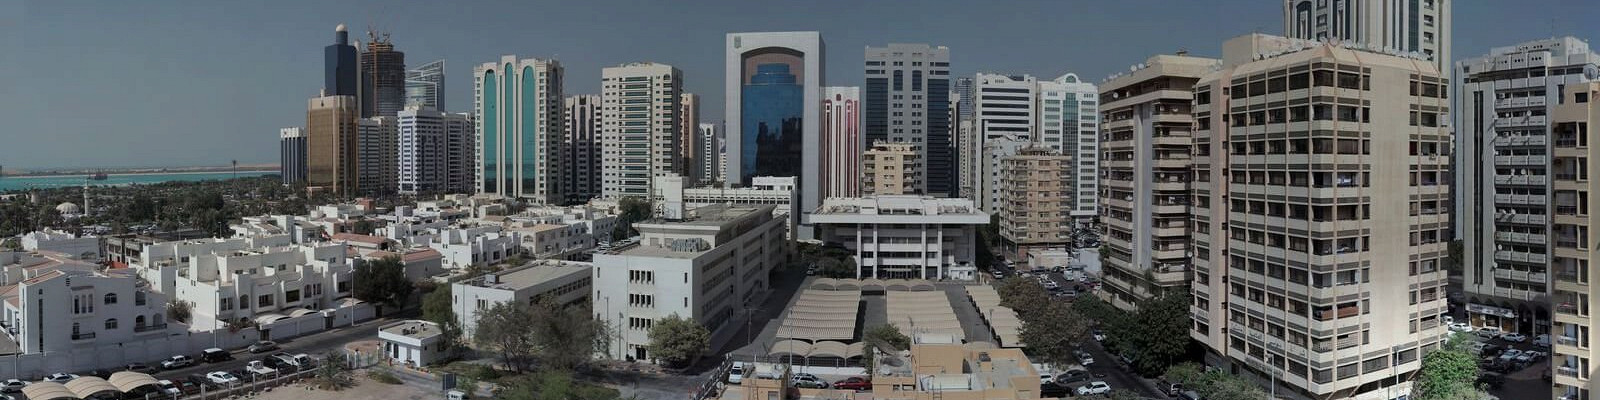 Город Абу-Даби